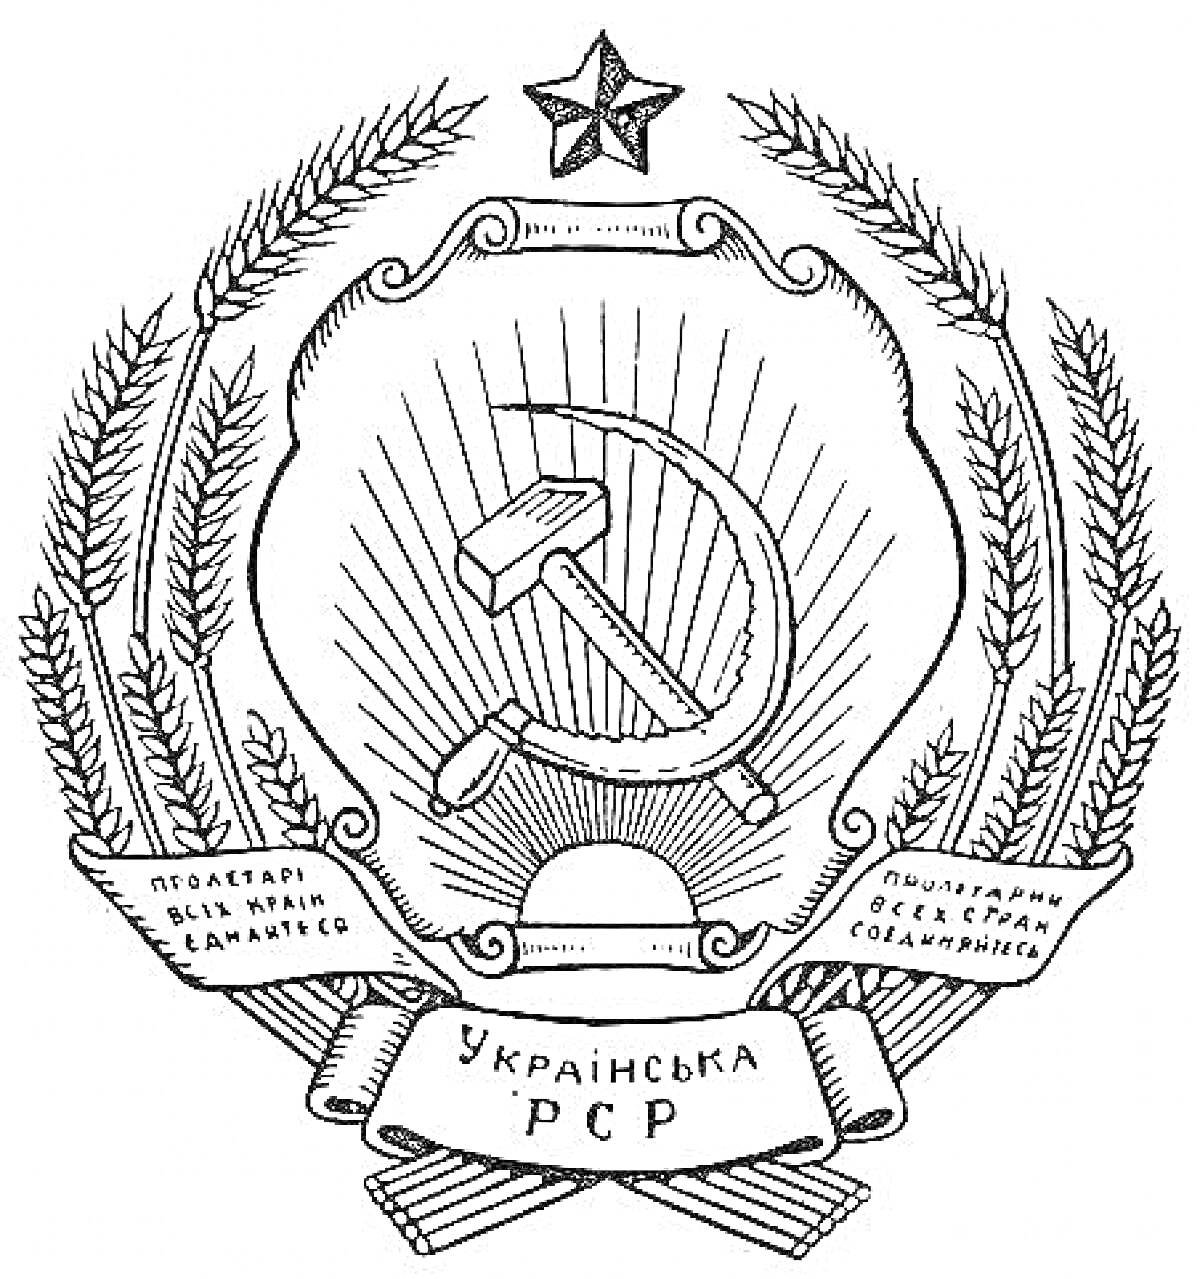 Герб Украинской ССР с серпом и молотом, колосьями, красной звездой и лентами с лозунгами